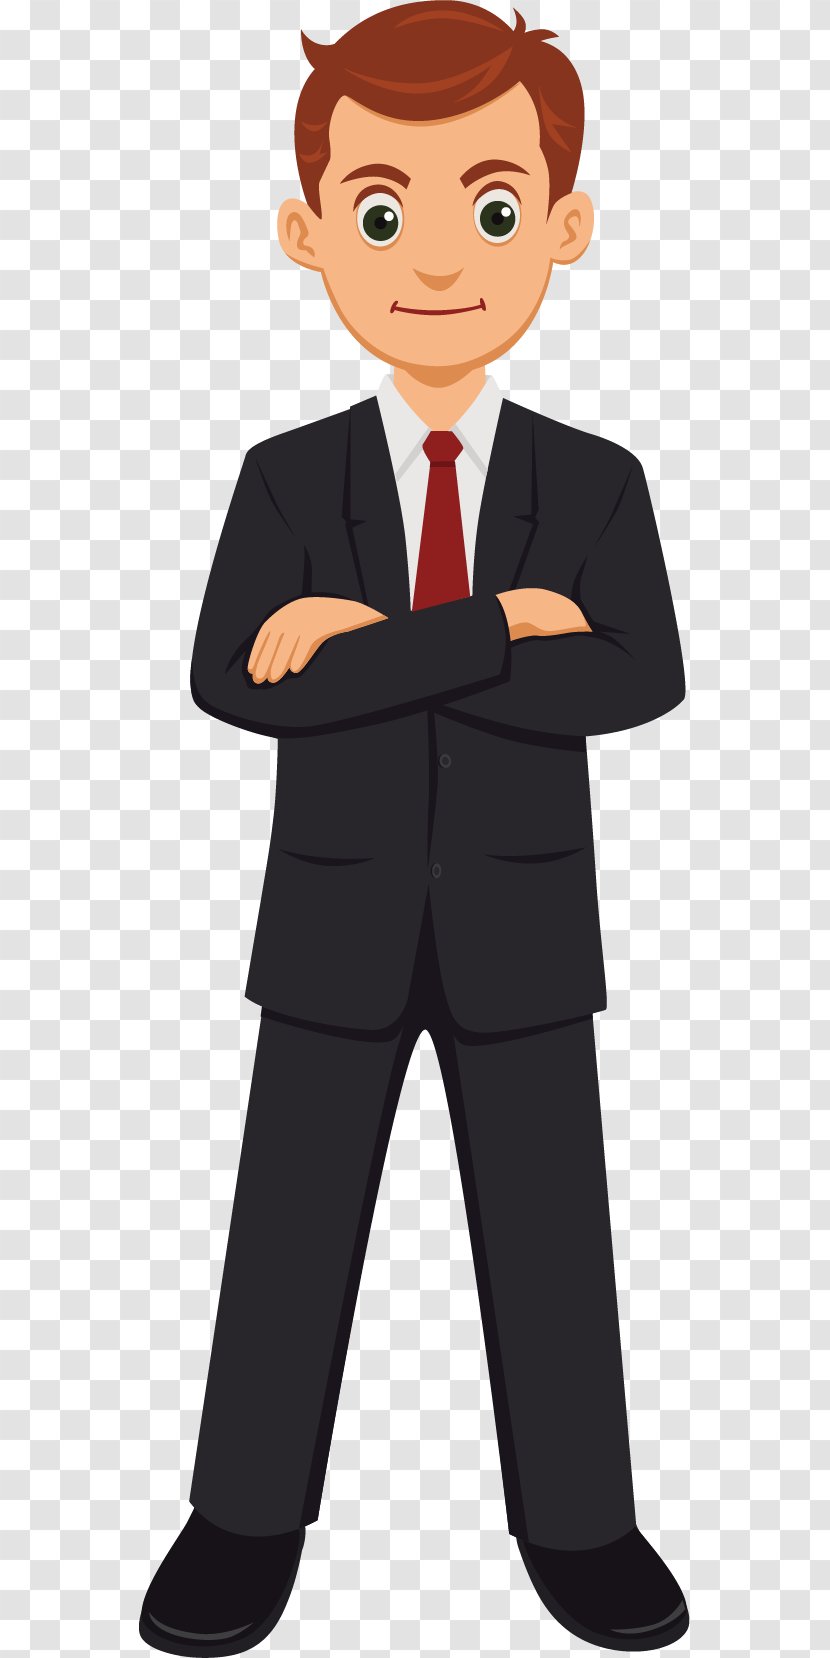 Cartoon - Vector Business Man Image Transparent PNG